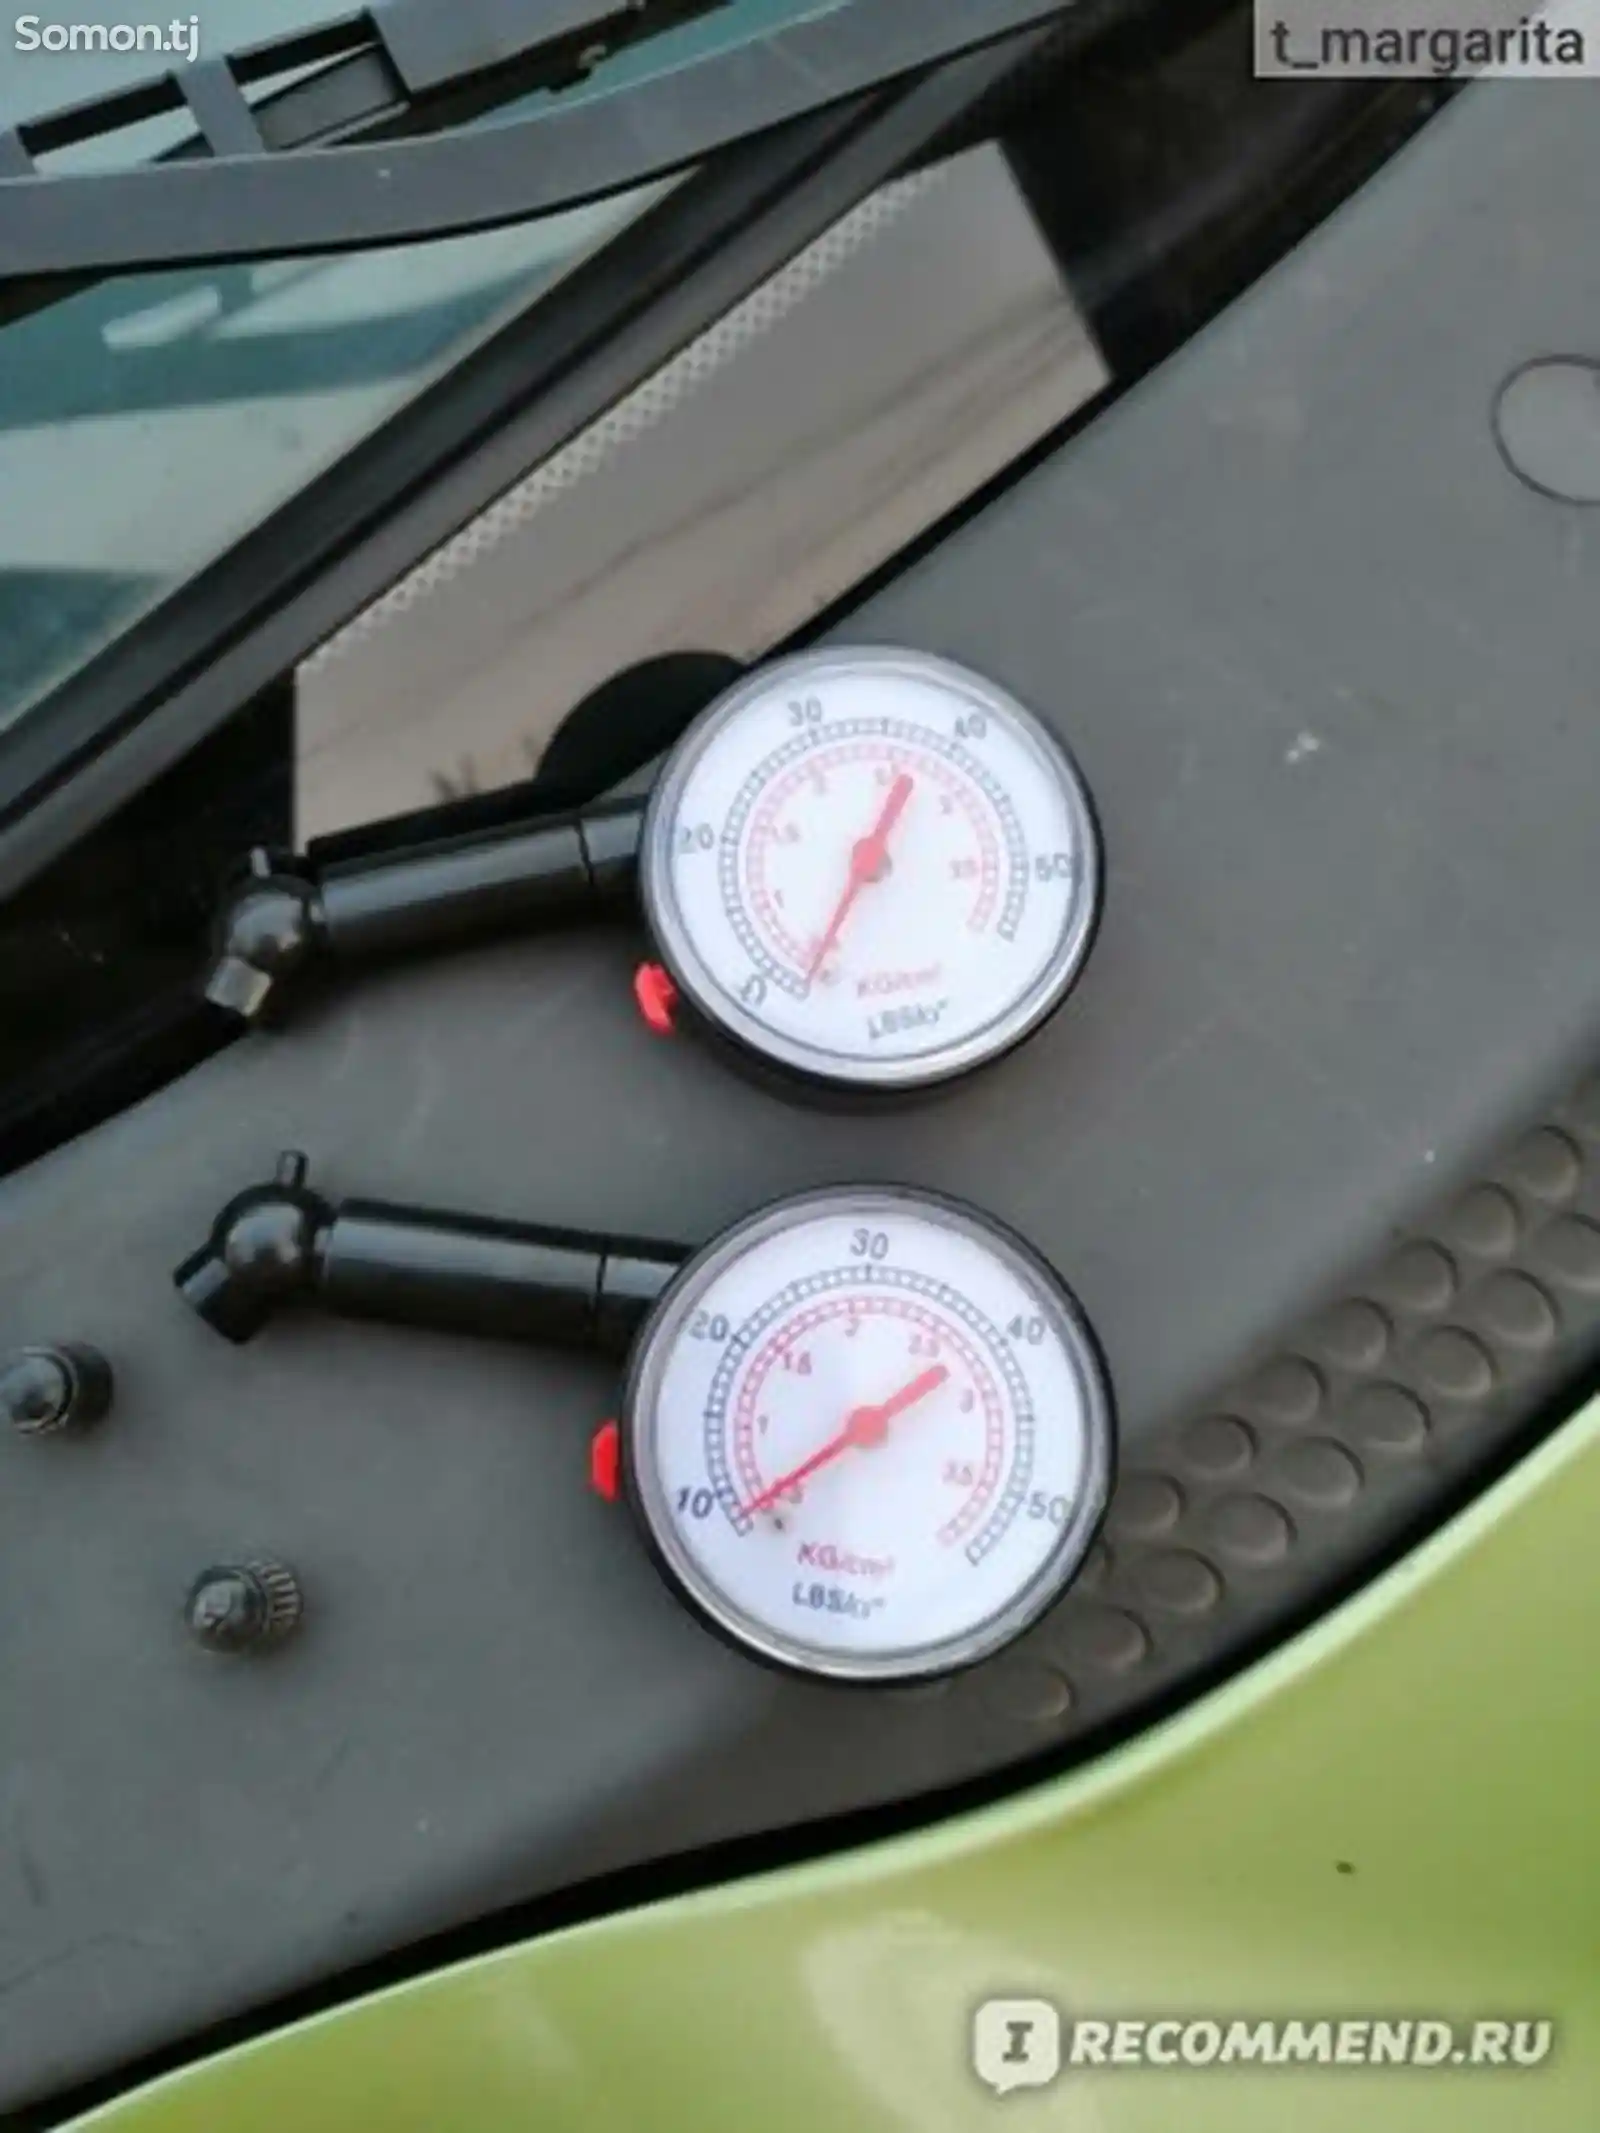 Манометр для проверки давления в шинах Autostandart-2